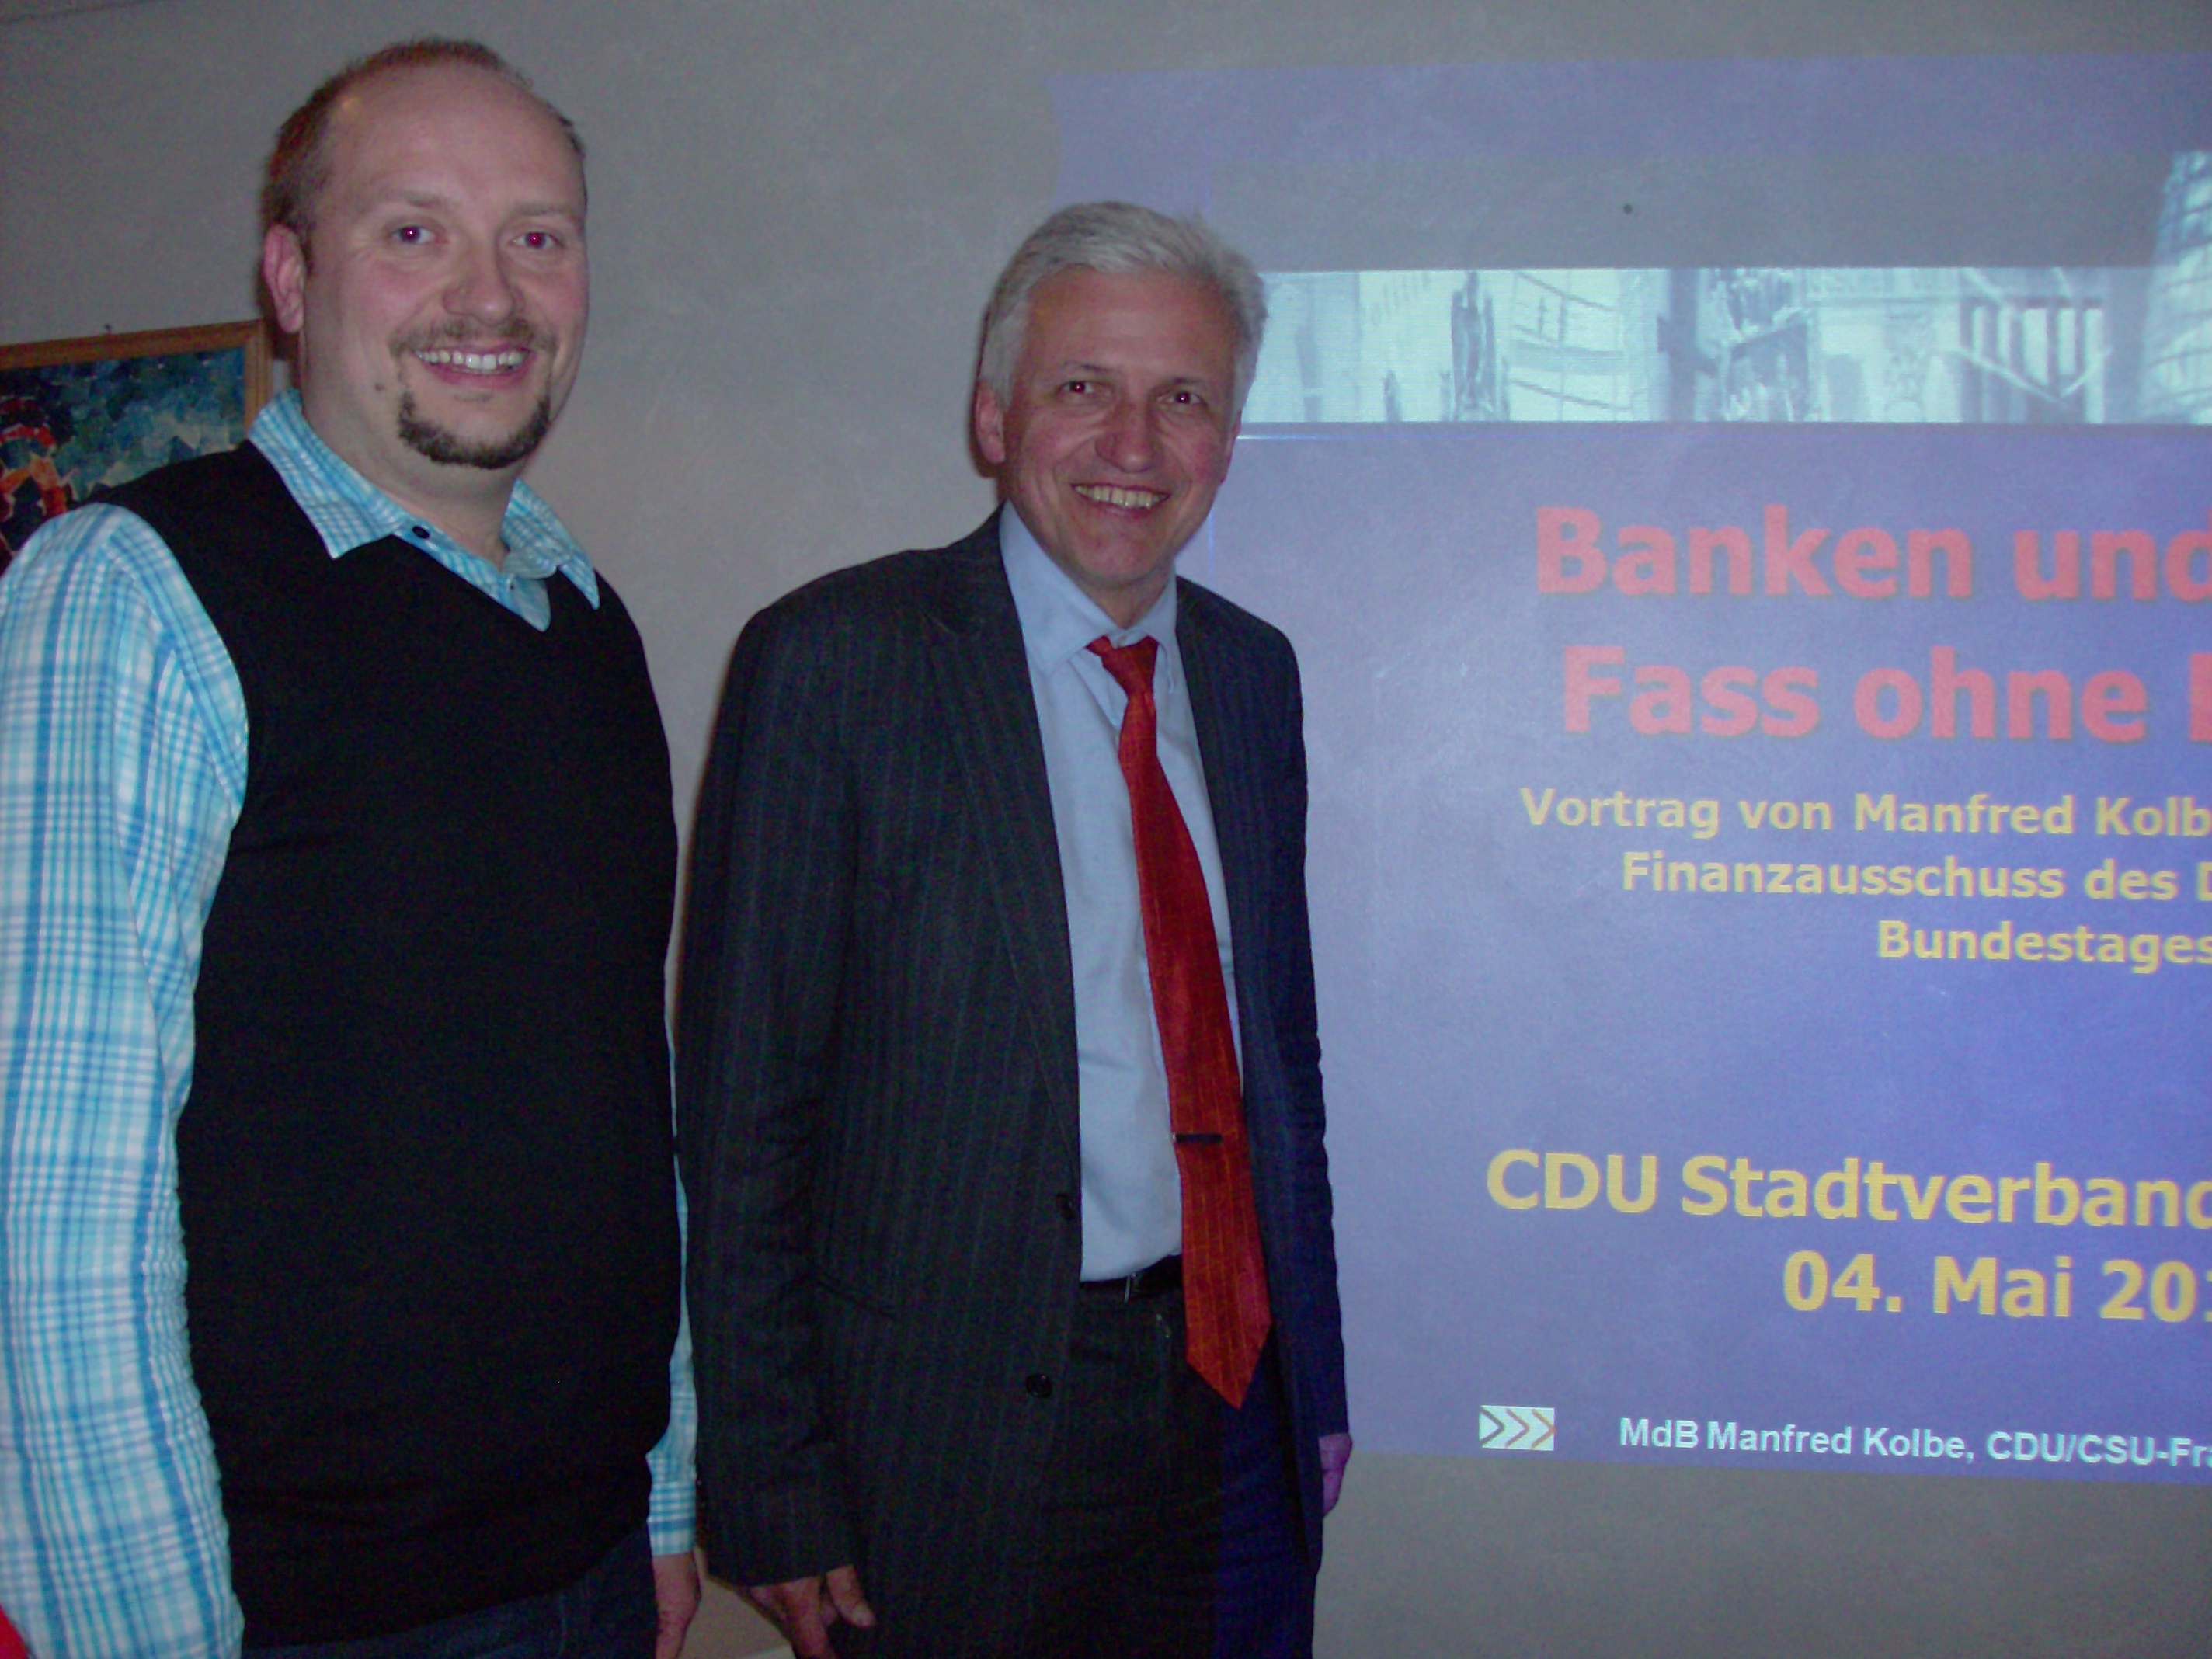 Der Vorsitzende des CDU Stadtverbandes Oschatz Holger Mucke (l.) vor dem Vortrag mit Manfred Kolbe (r.)